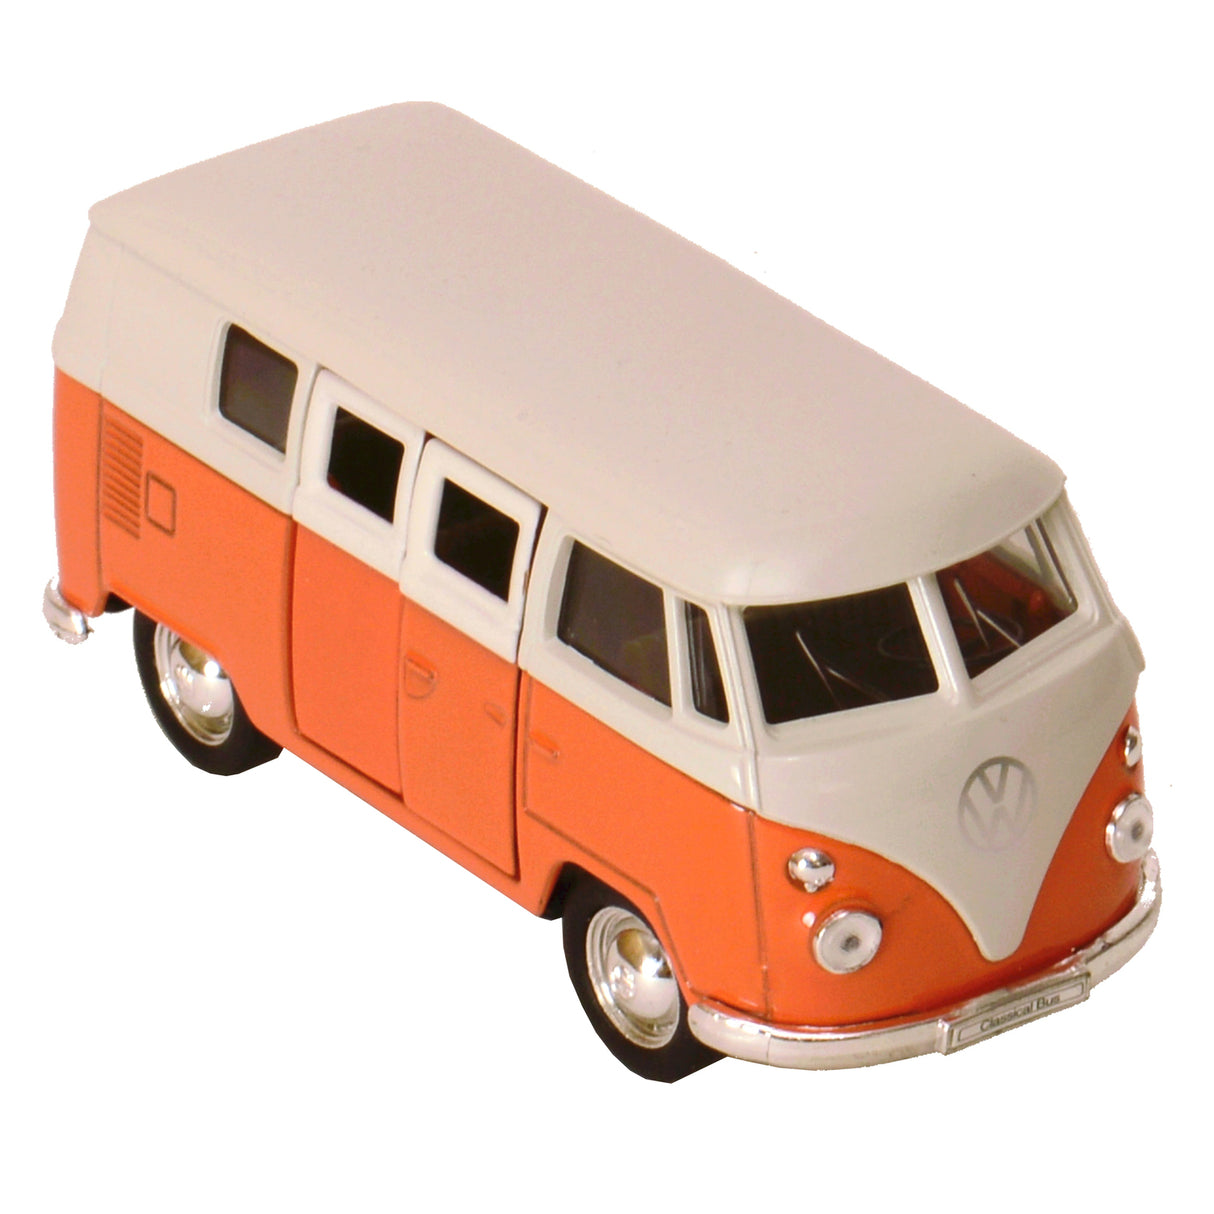 Volkswagen VW T1 Bus Modellauto mit Rückziehmotor in orange